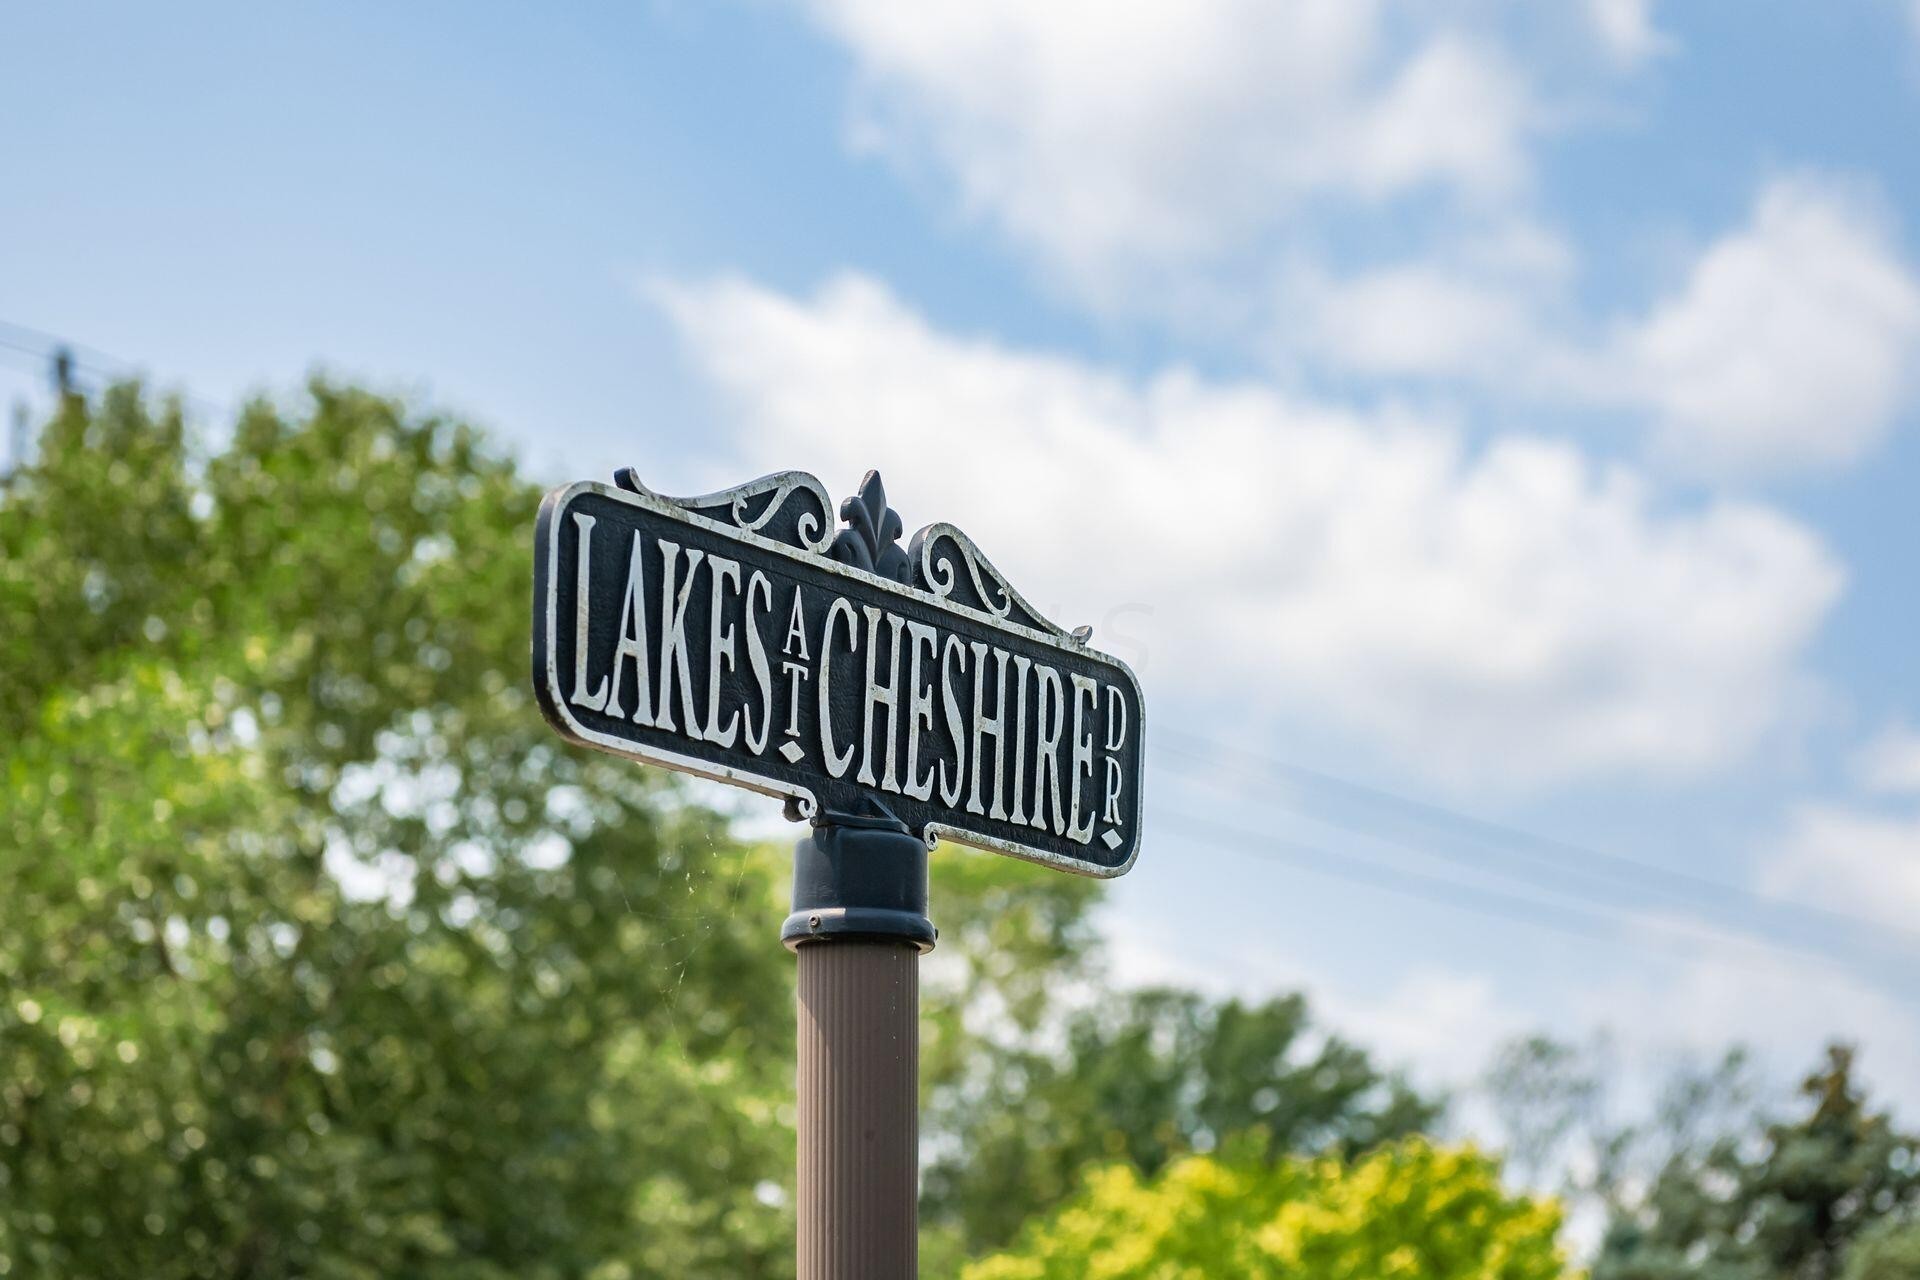 40. 5 Lakes At Cheshire Drive